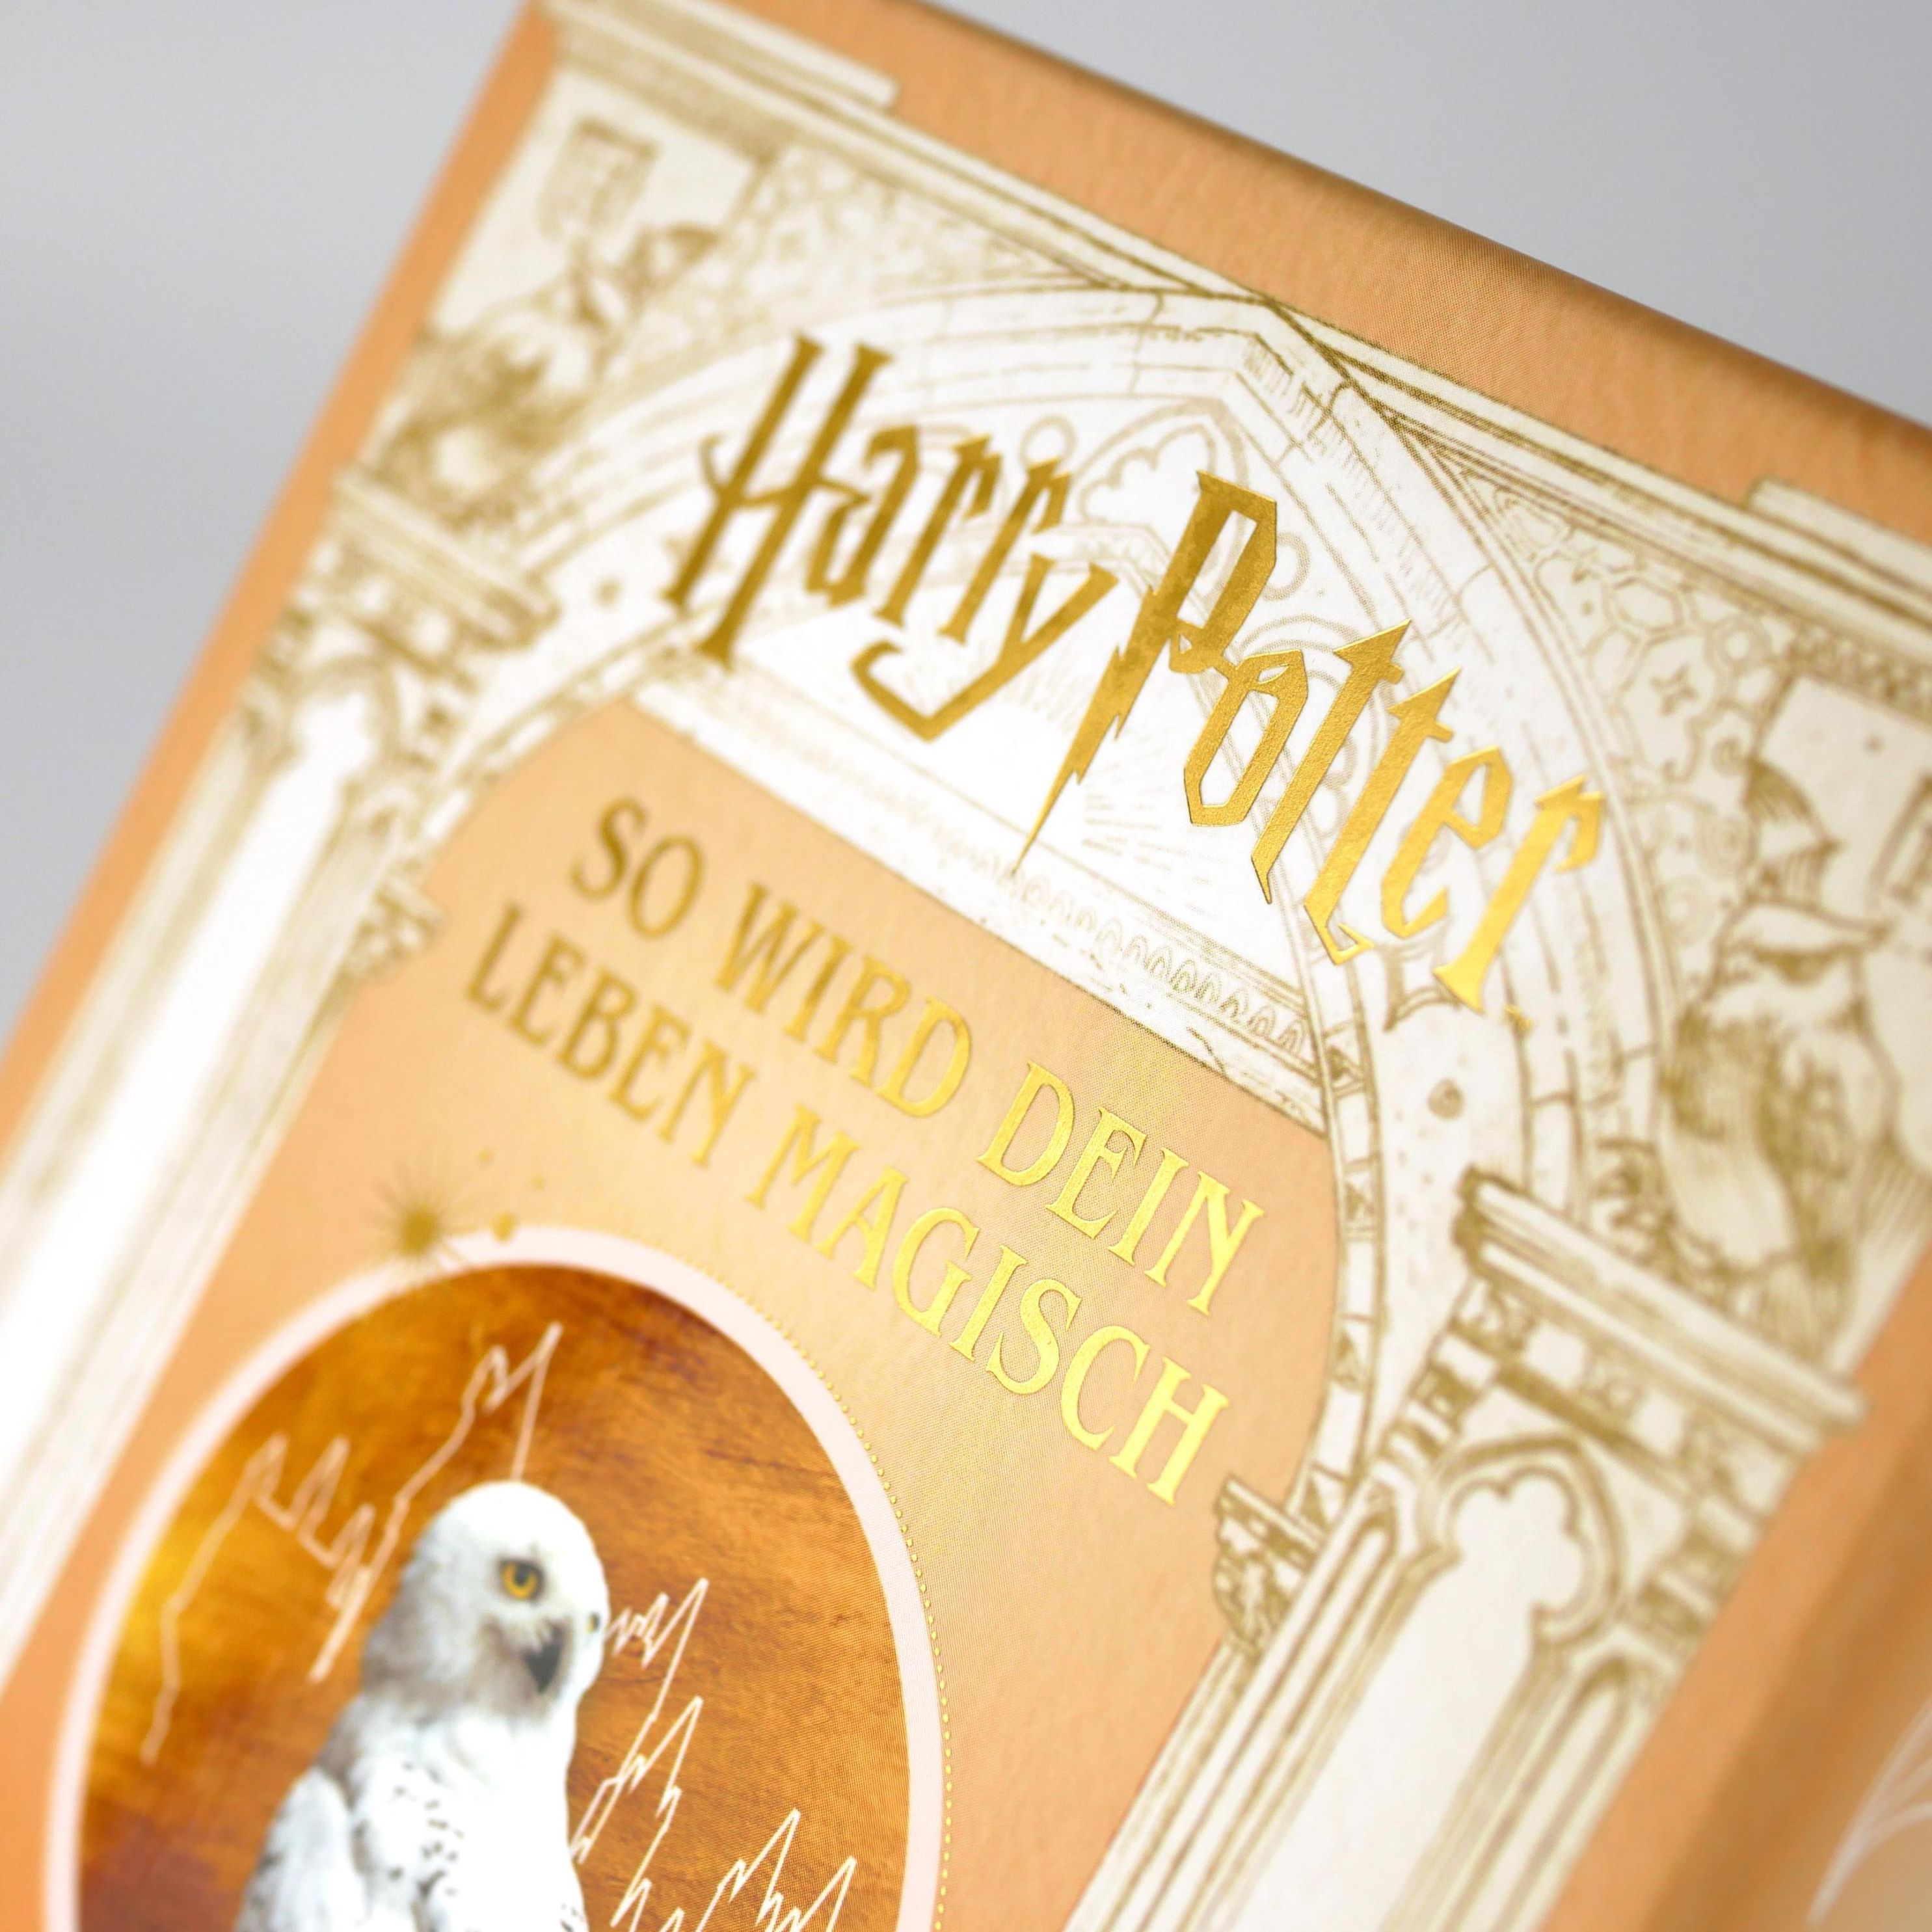 Harry Potter: So wird dein Leben magisch kaufen | tausendkind.de